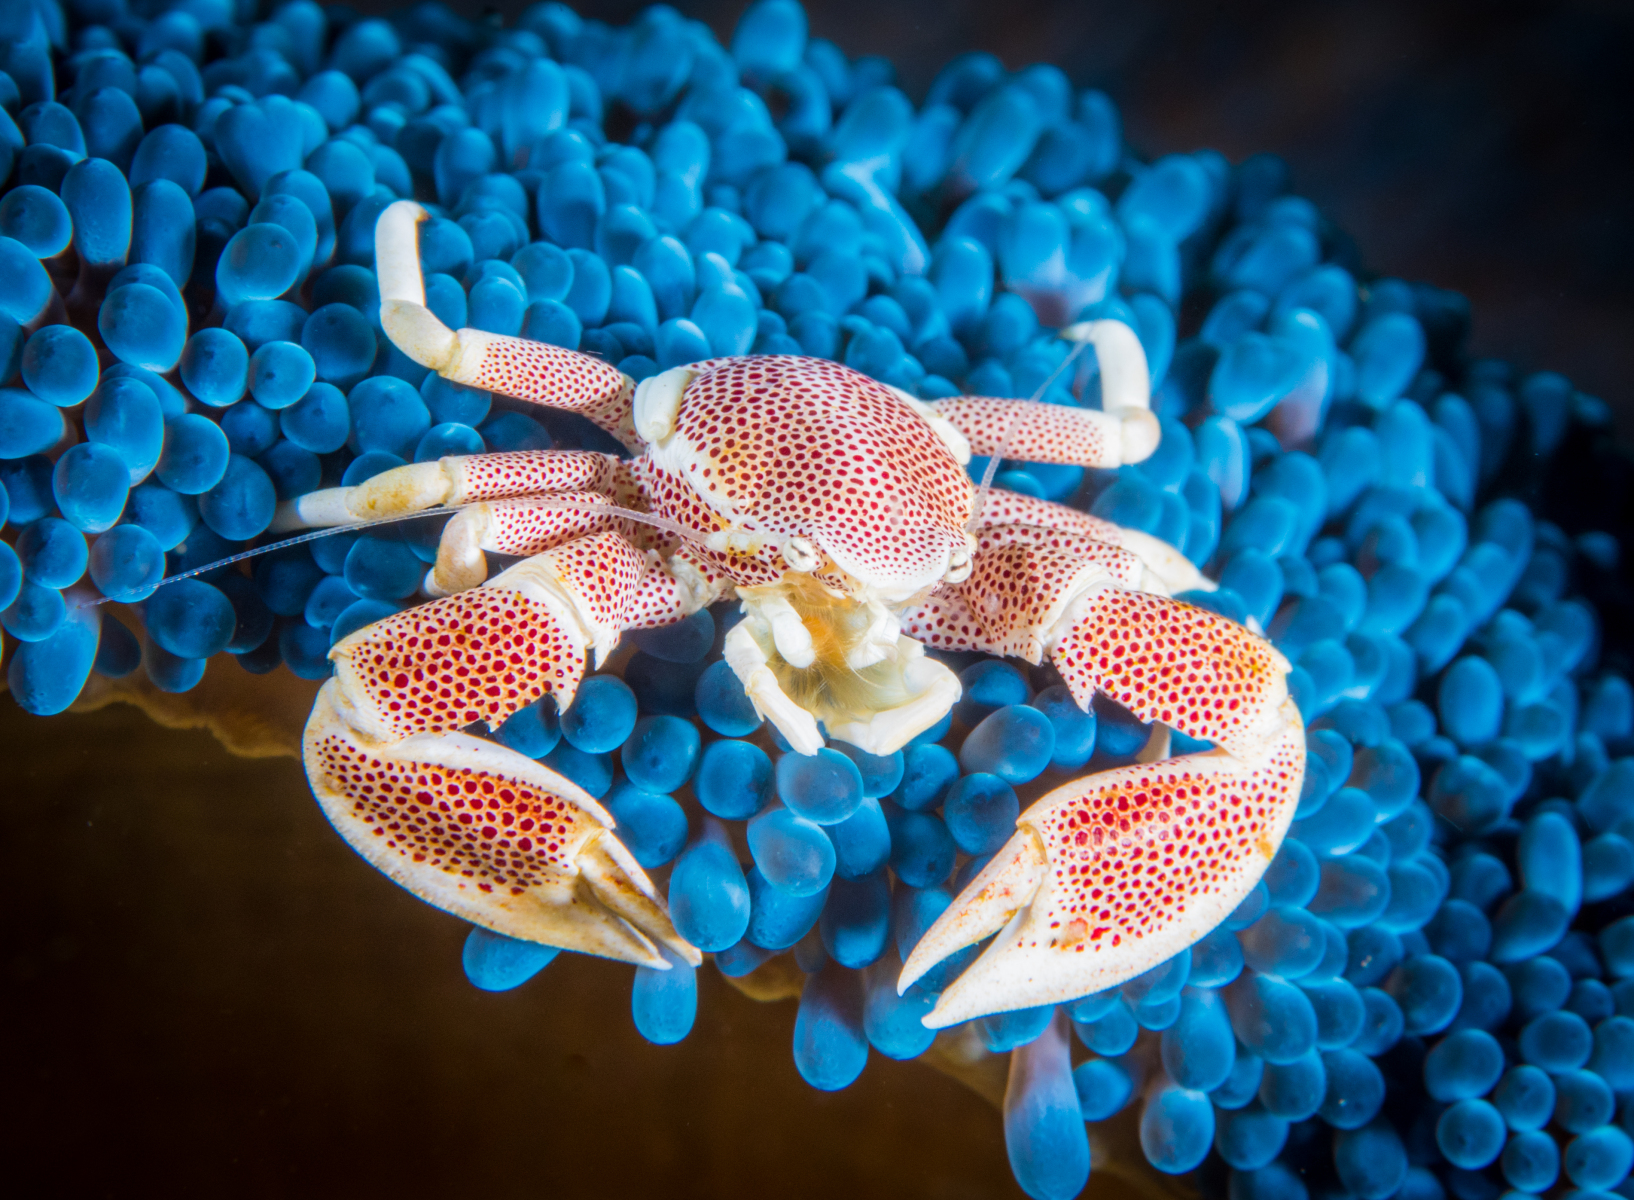 porcelin-crab-on-blue-anemone